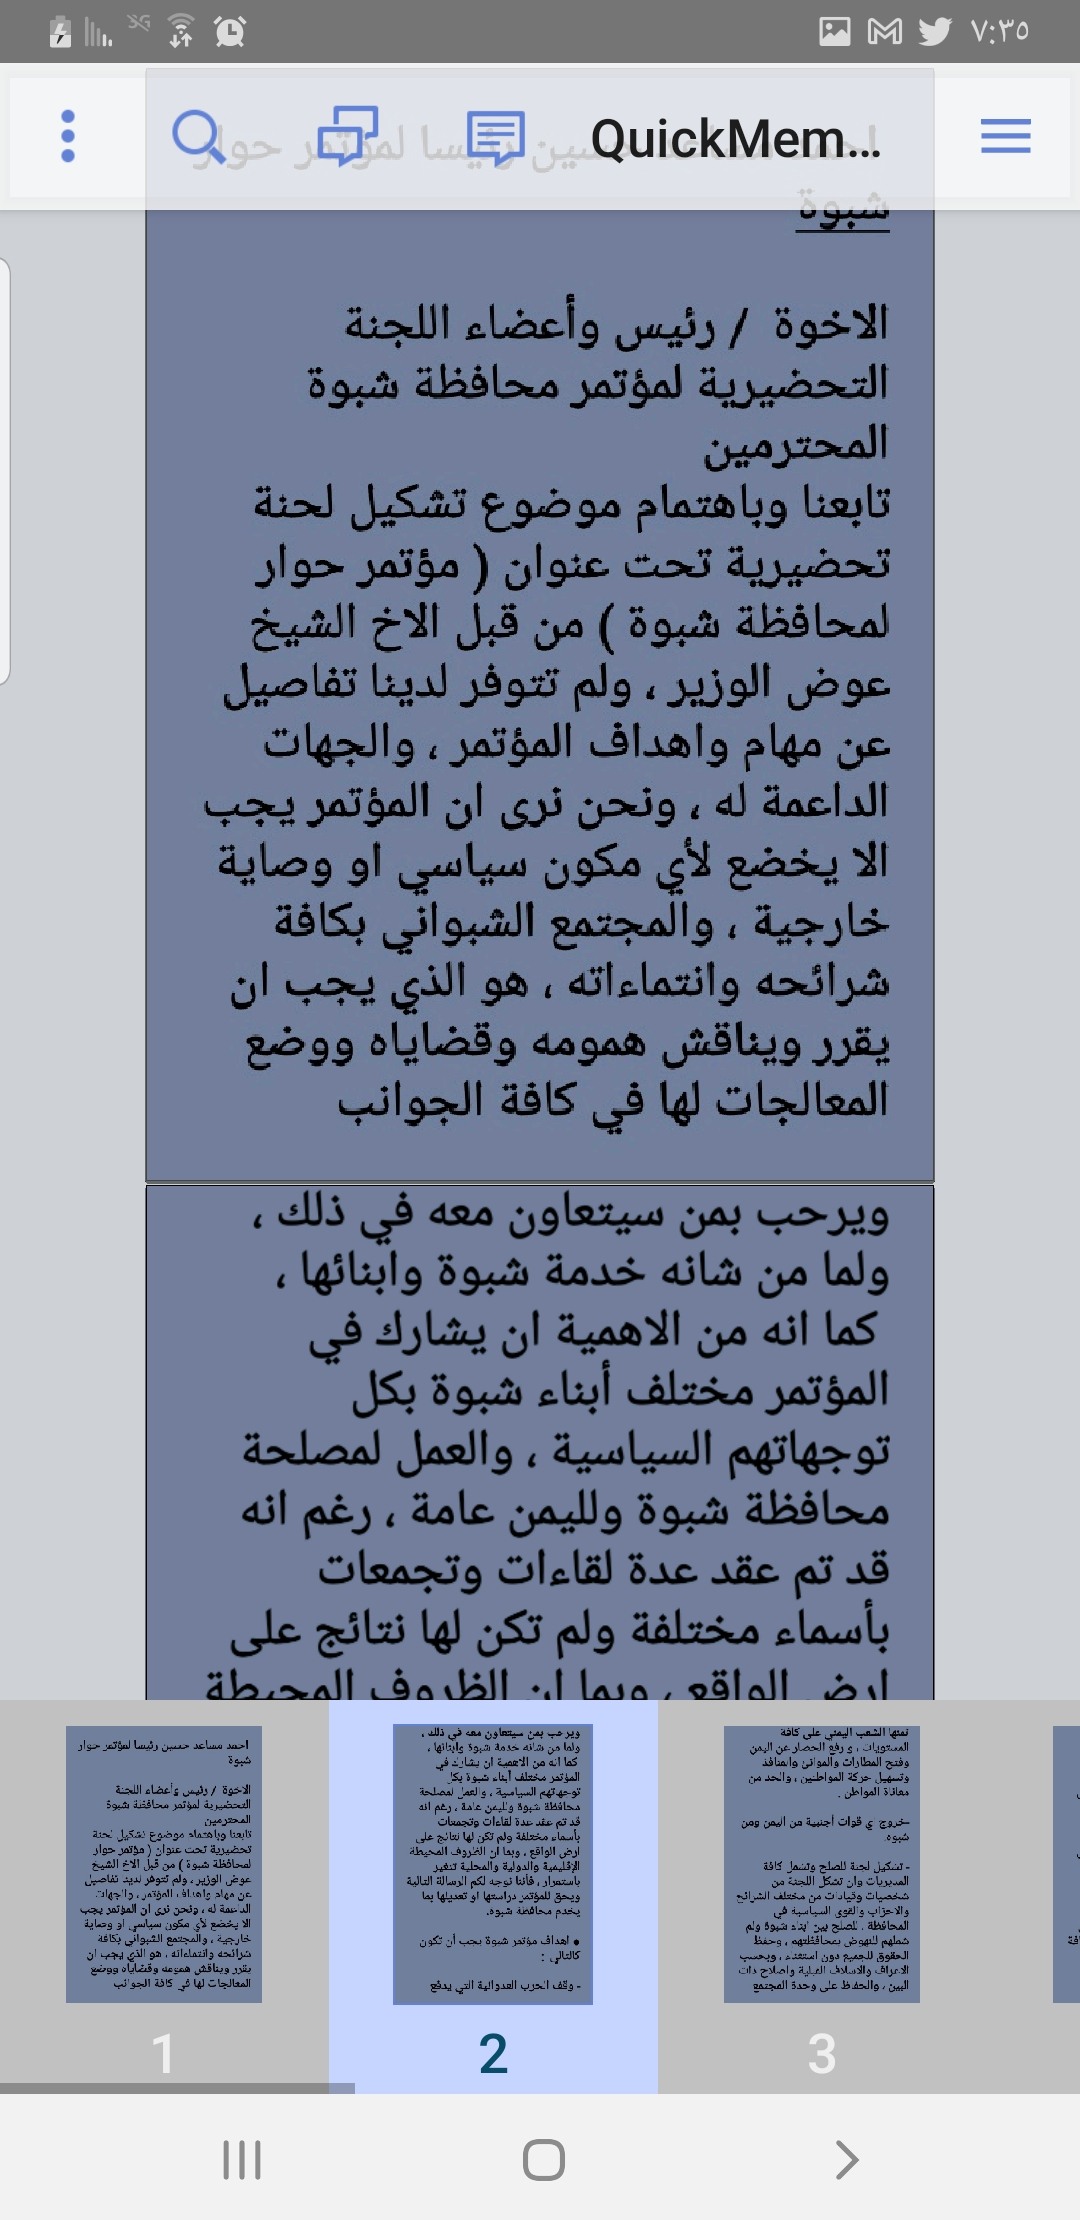 اللواء احمد مساعد حسين رئيساً لمؤتمر شبوة ..!!